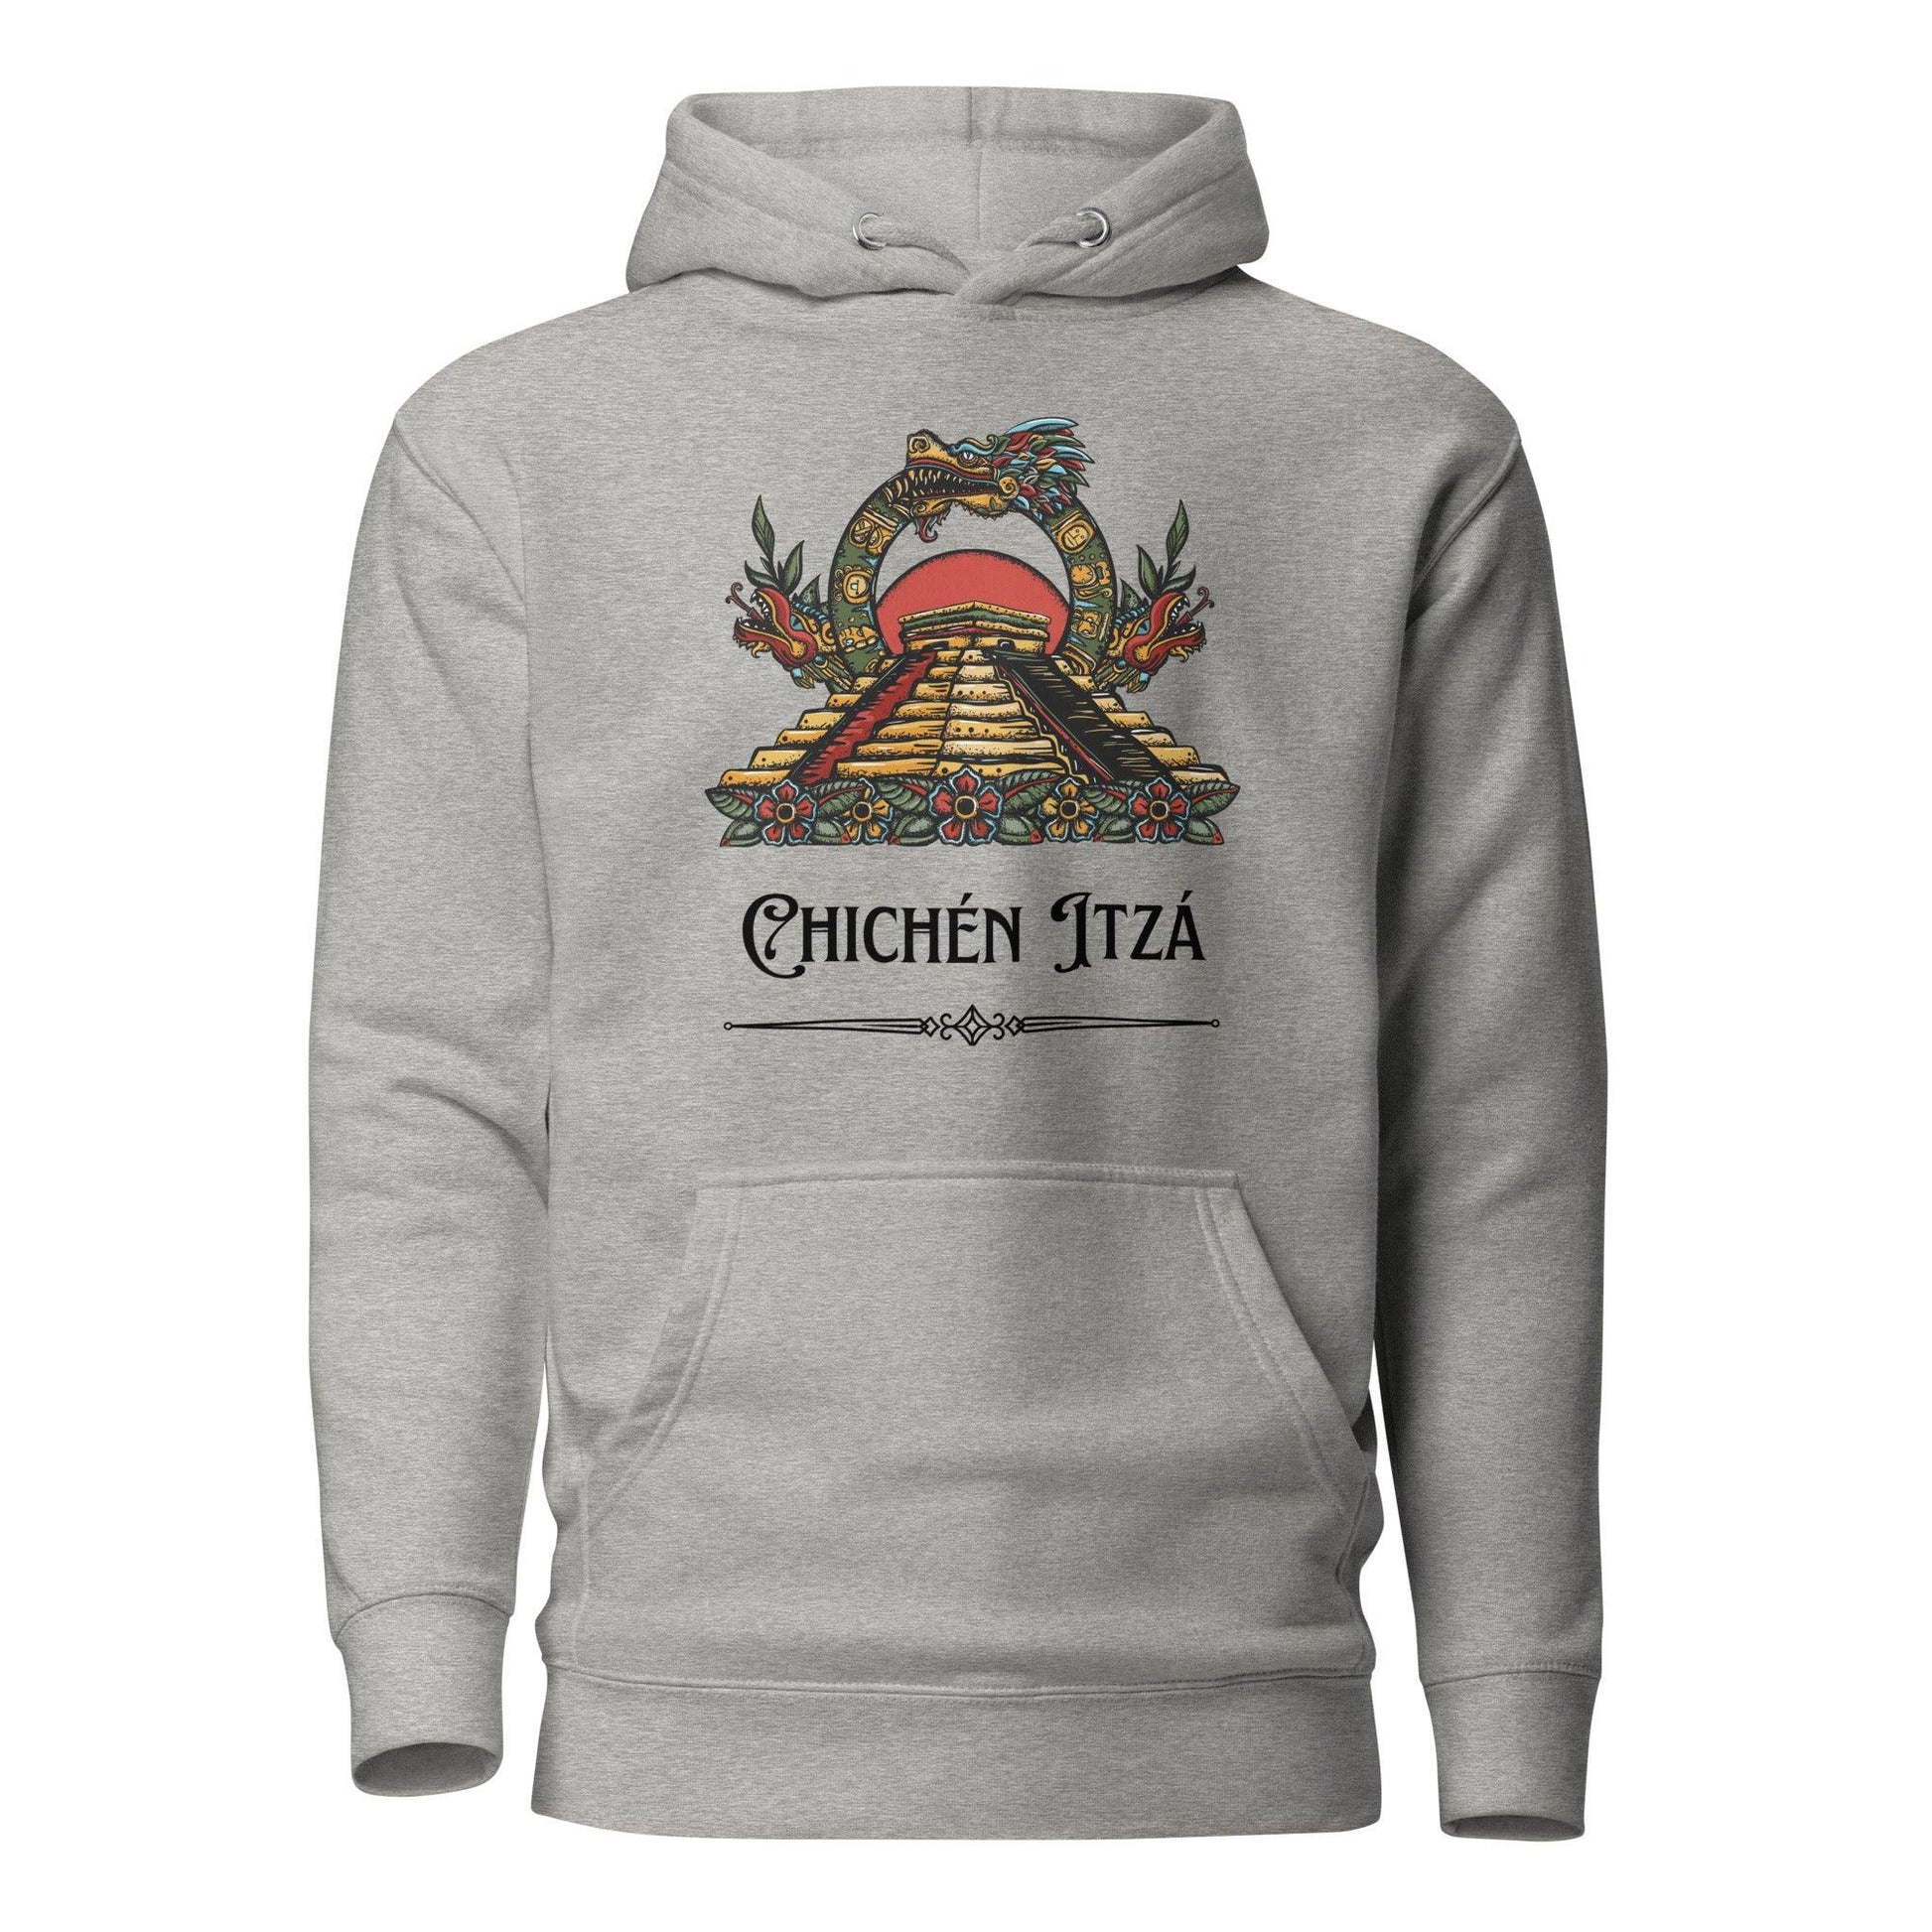 Chichén Itzá Hoodie - Thrive Attire